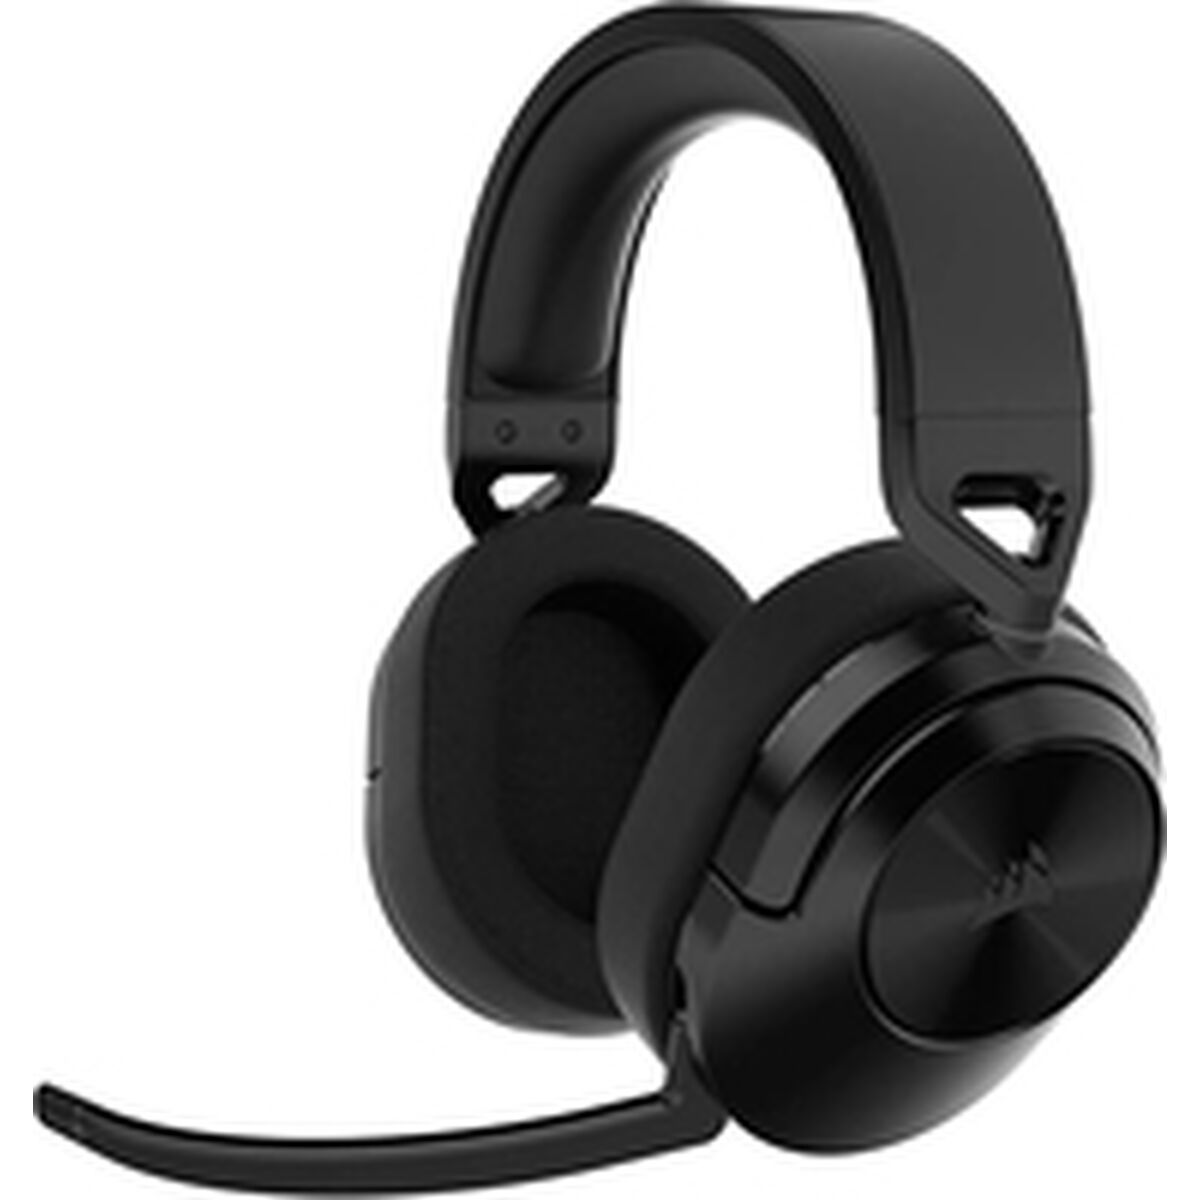 Osta tuote Bluetooth Kuulokkeet Mikrofonilla Corsair HS55 WIRELESS verkkokaupastamme Korhone: Lelut & Asut 20% alennuksella koodilla VIIKONLOPPU